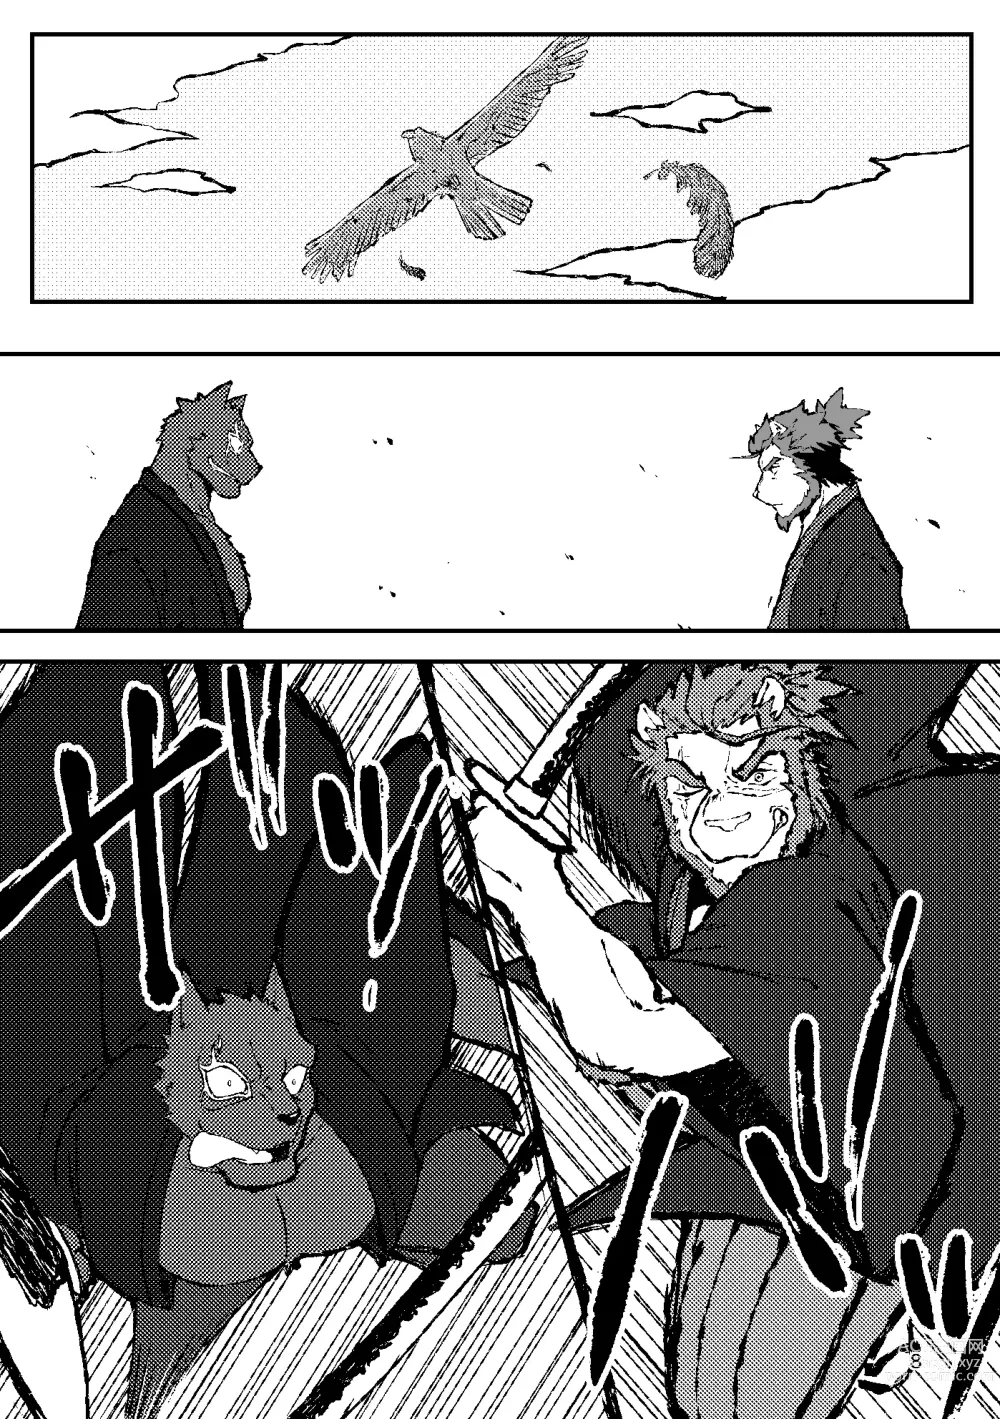 Page 8 of doujinshi KA.TA.NA. Ch. 1-2